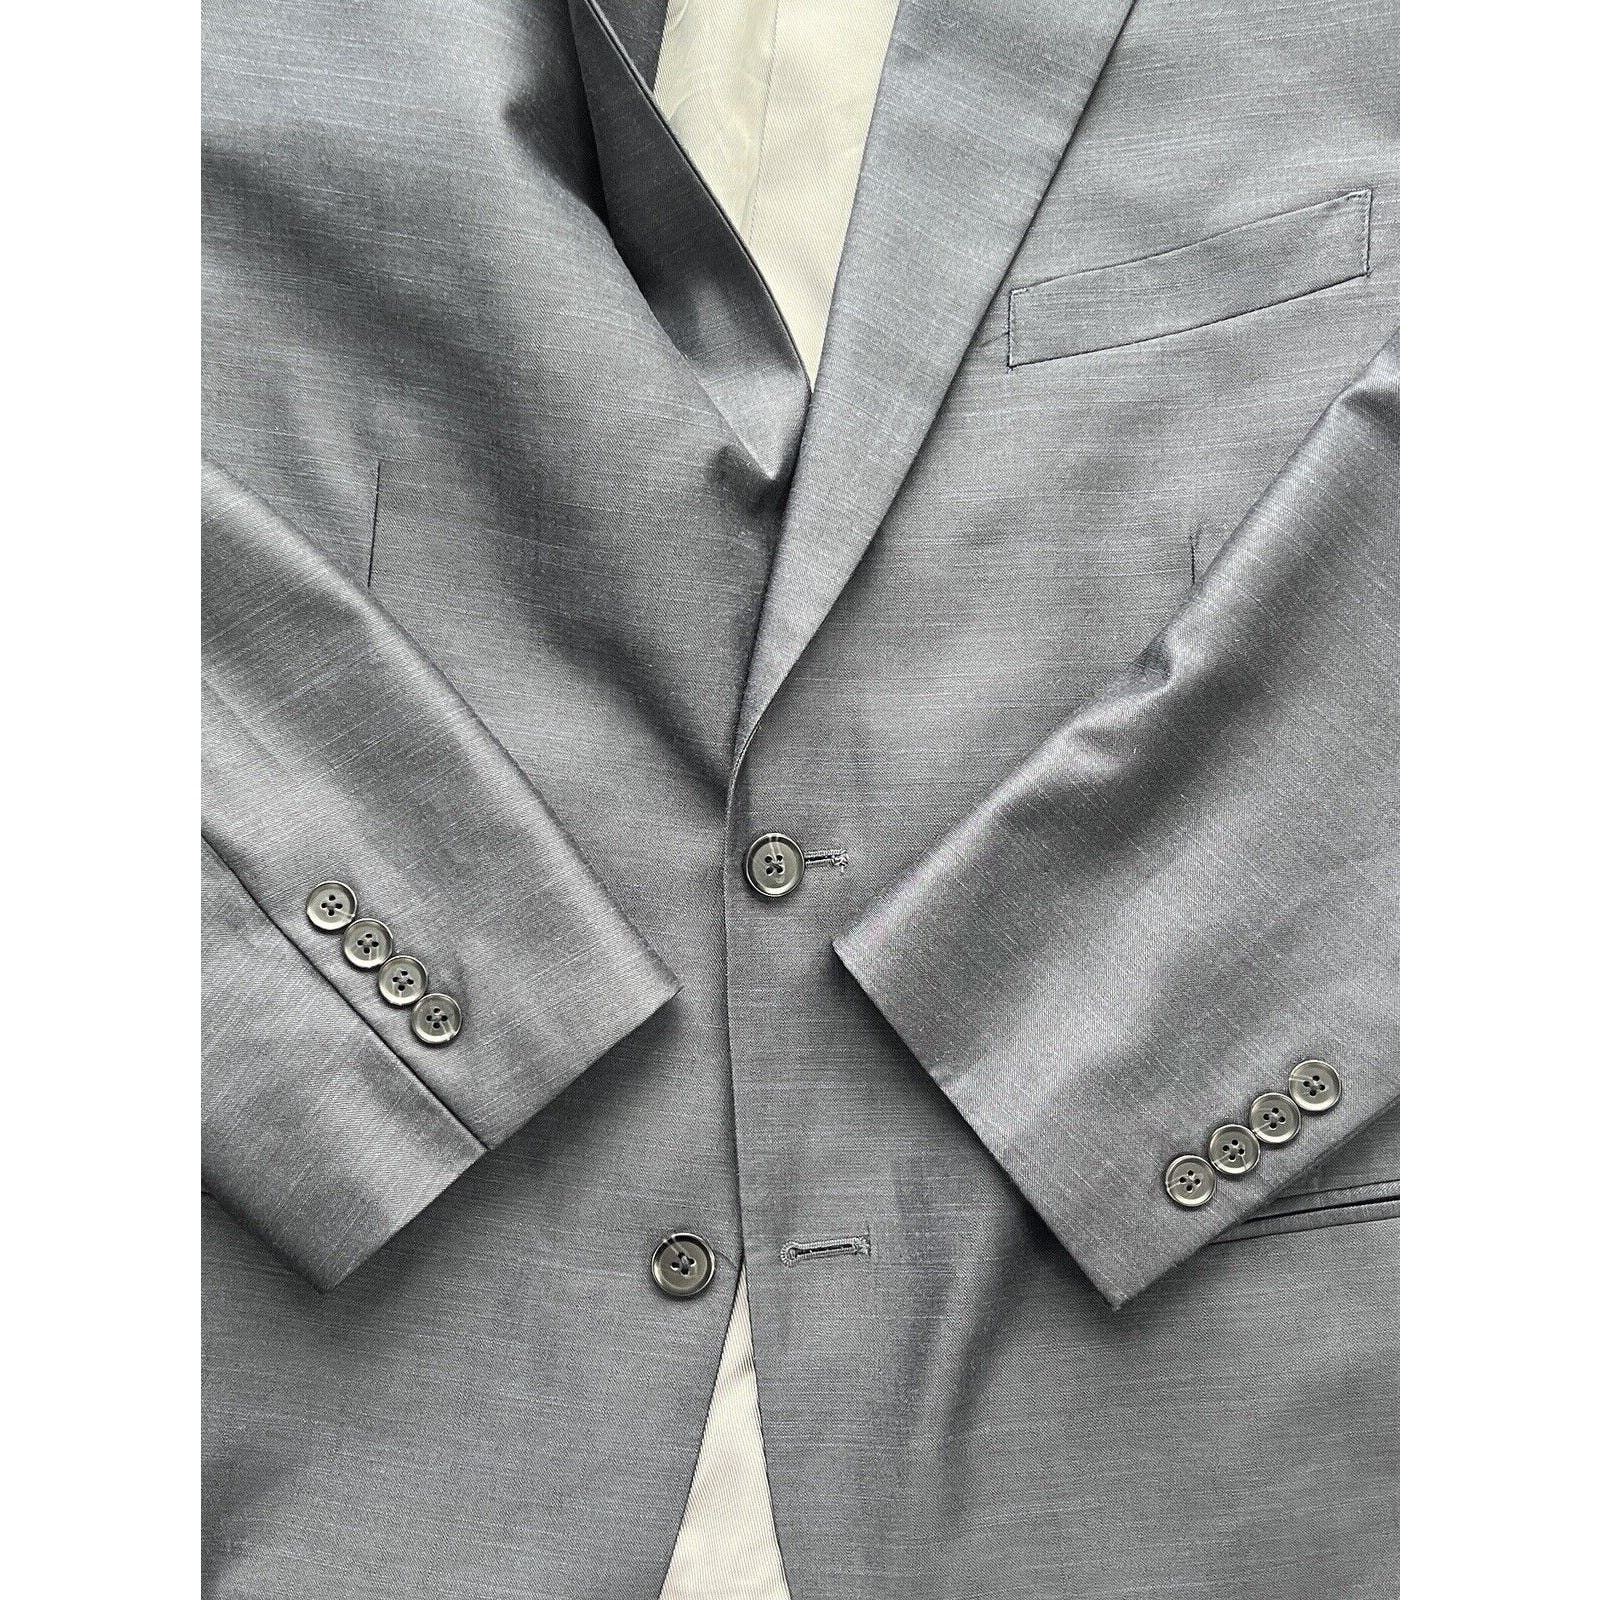 Steve Harvey Celebrity Edition 2 Button Suit Men’s 44R Blue Model King 34x34